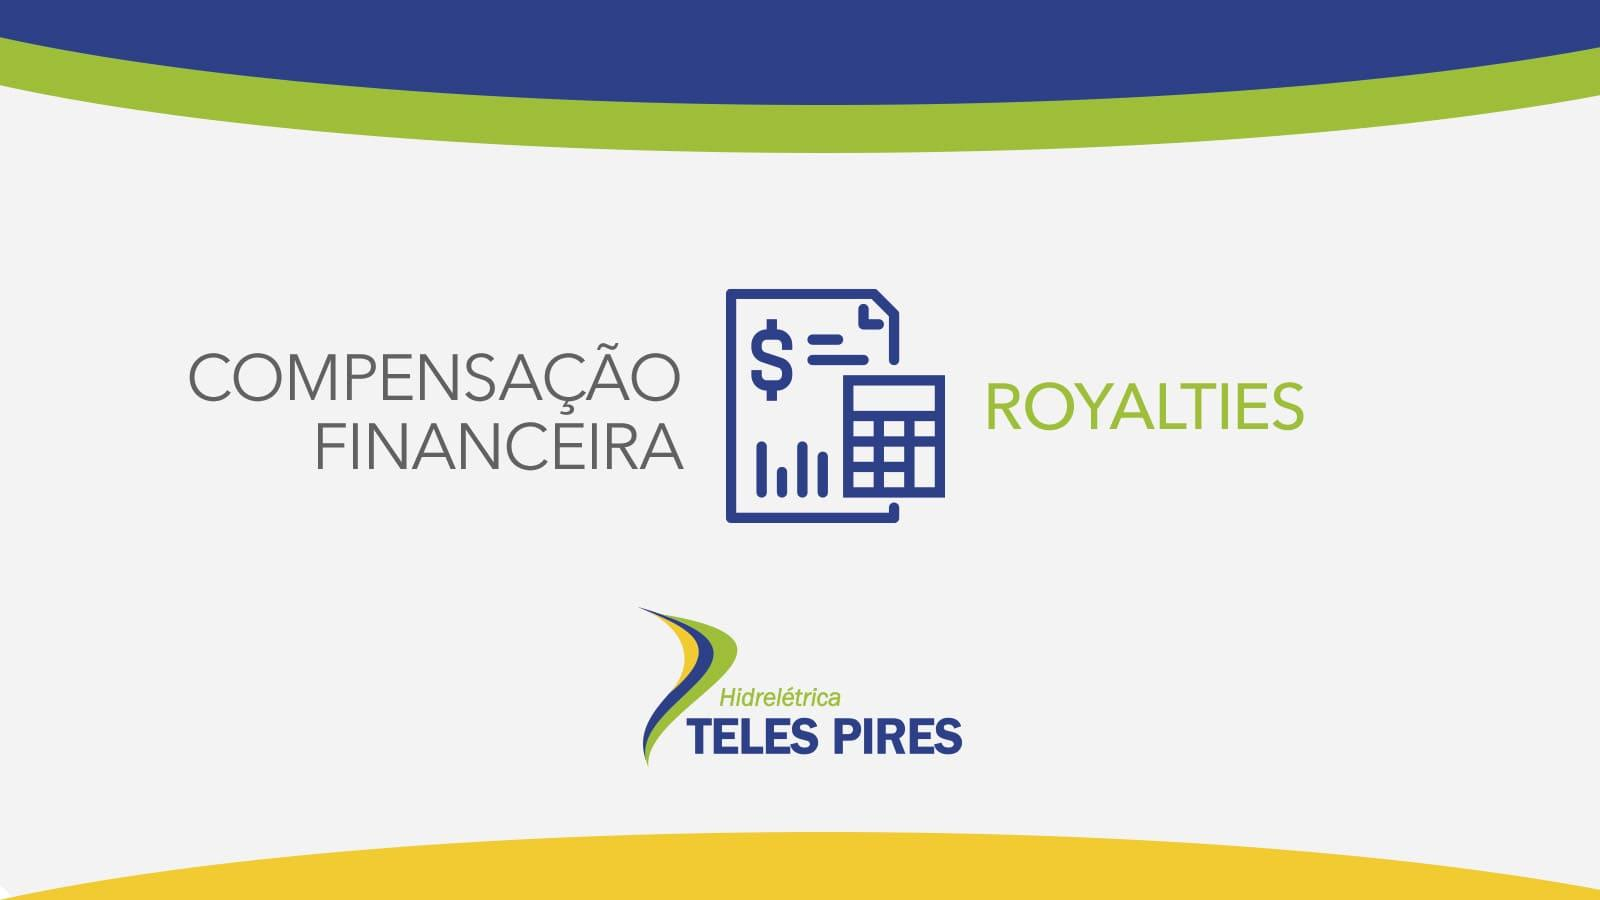 Março 2021 – Compensação Financeira UHE Teles Pires – Jacareacanga/PA e Paranaíta/MT